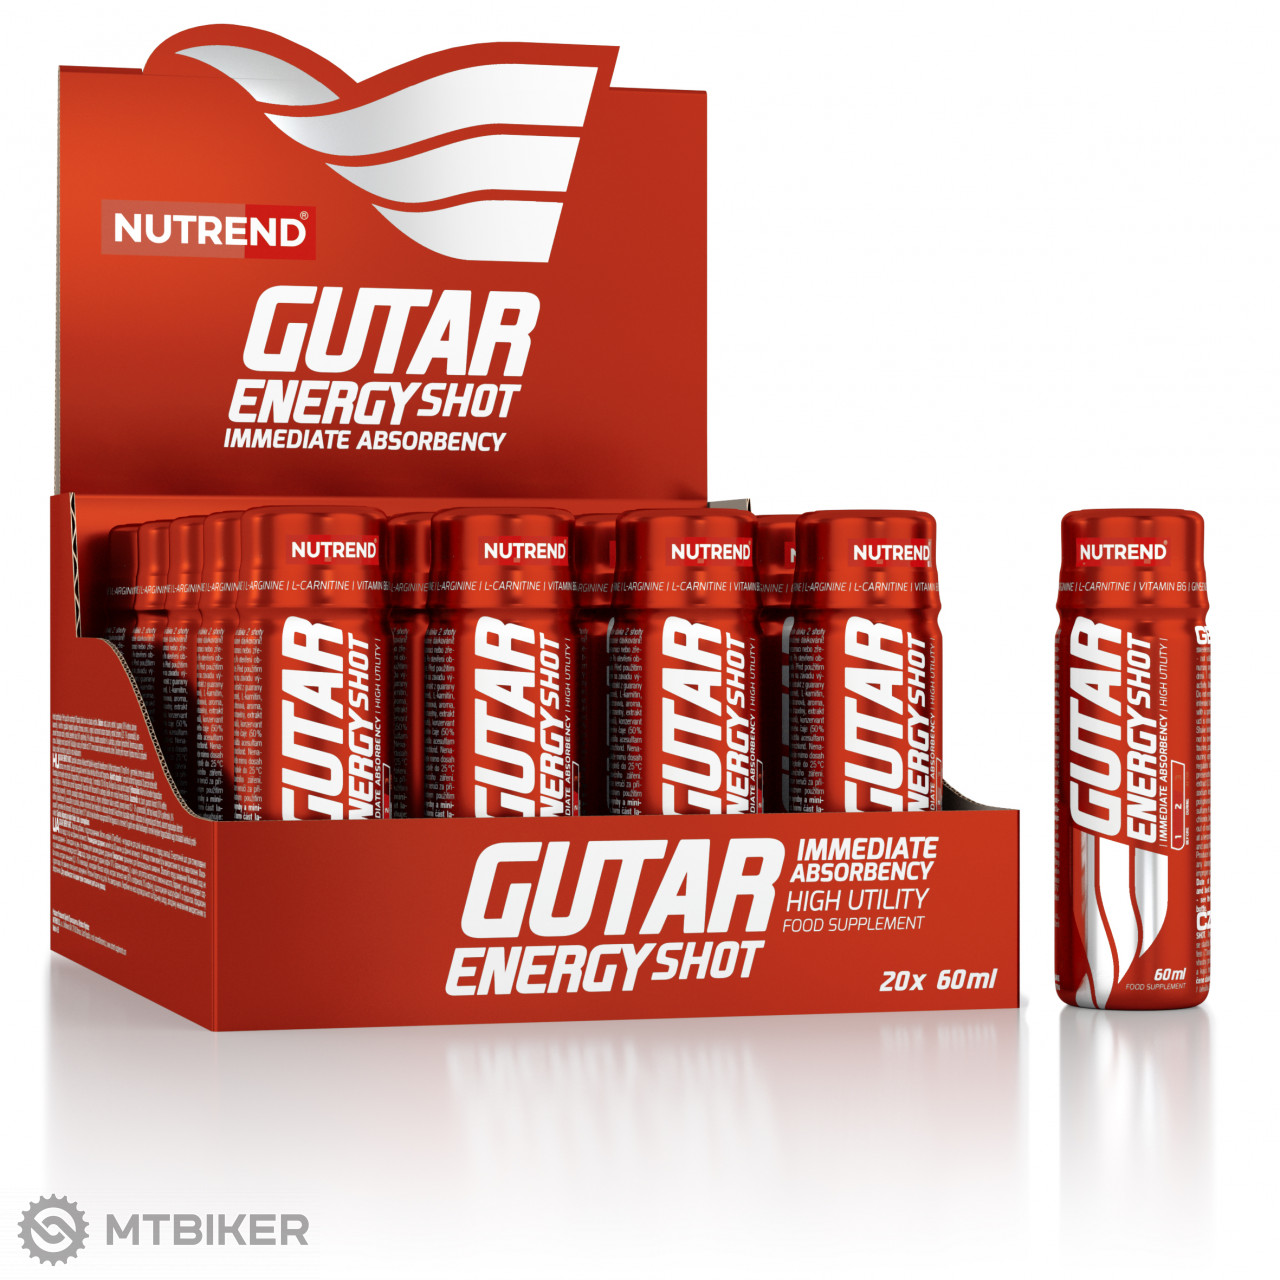 Nutrend Gutar Energy Shot energetický nápoj, 60 ml